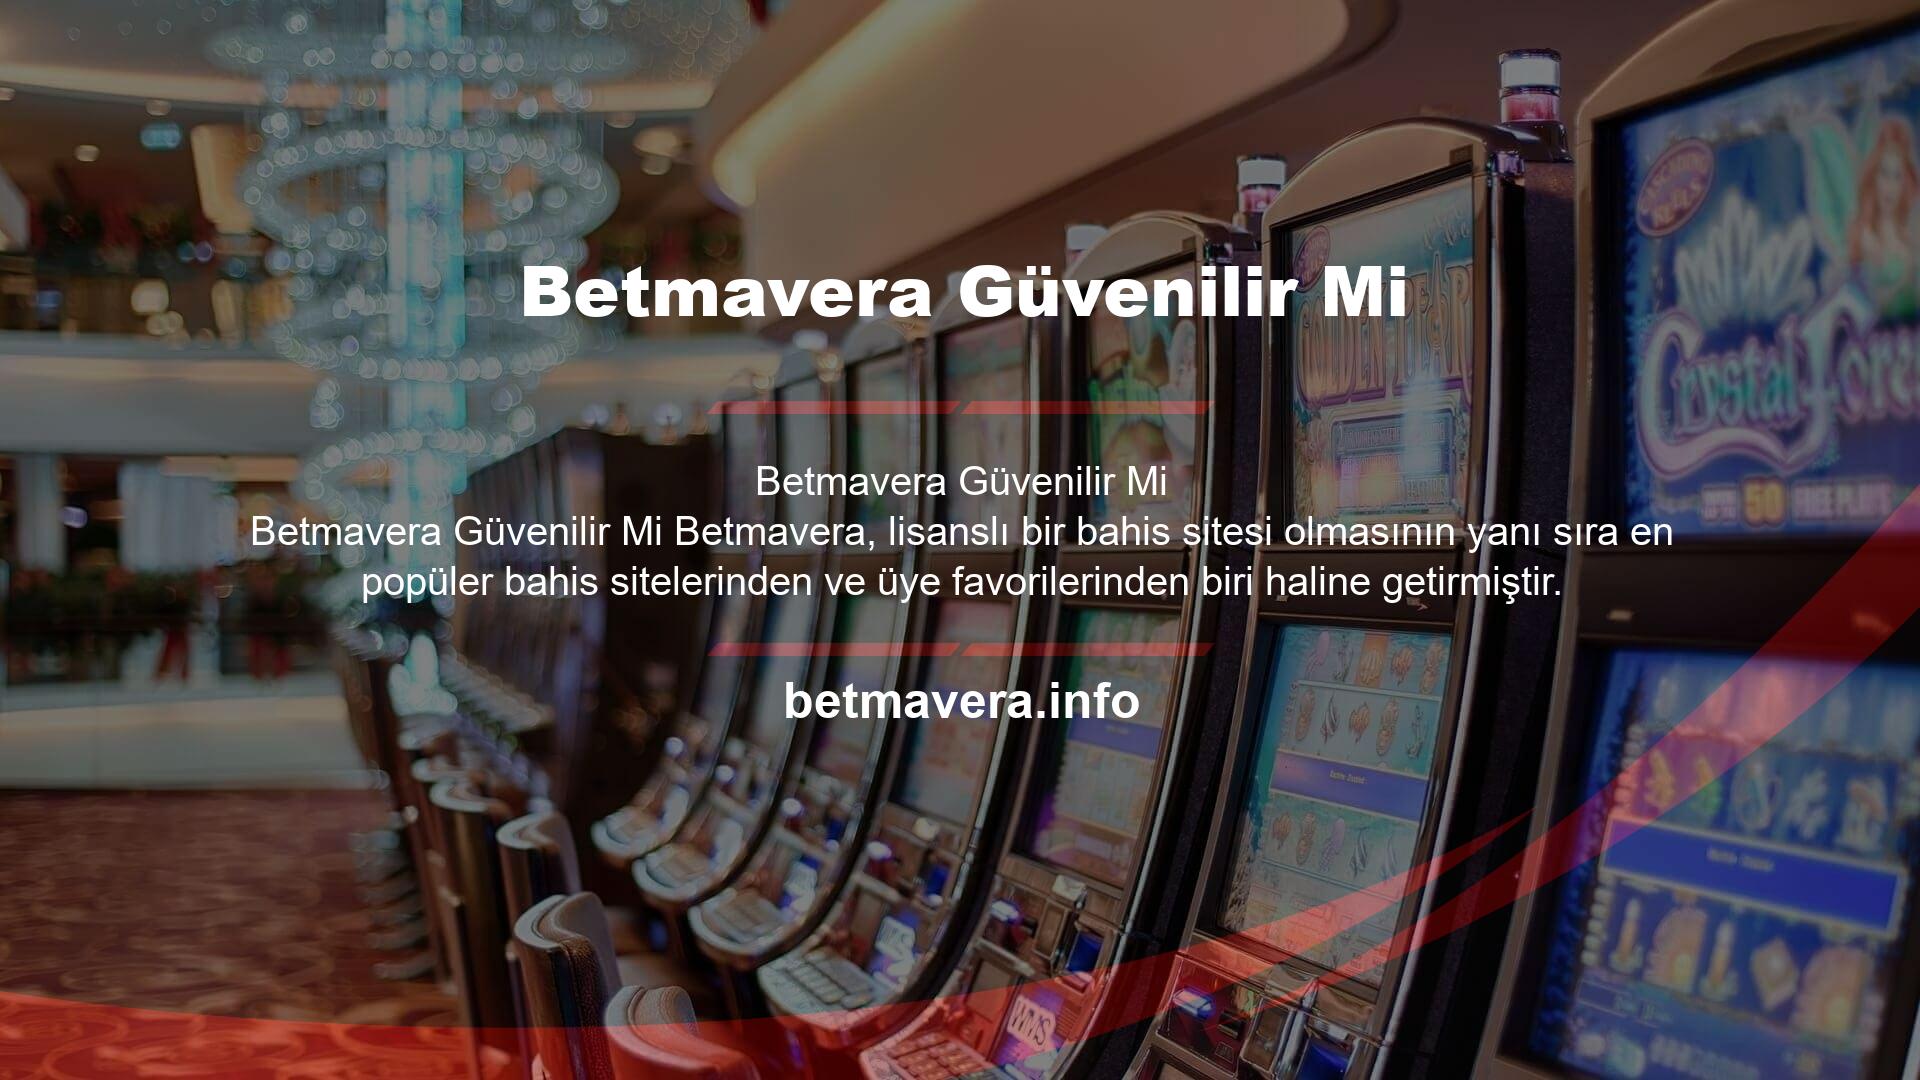 Betmavera Bahis tarafından sunulan bir diğer güvenilir hizmet ise 7/24 canlı destektir